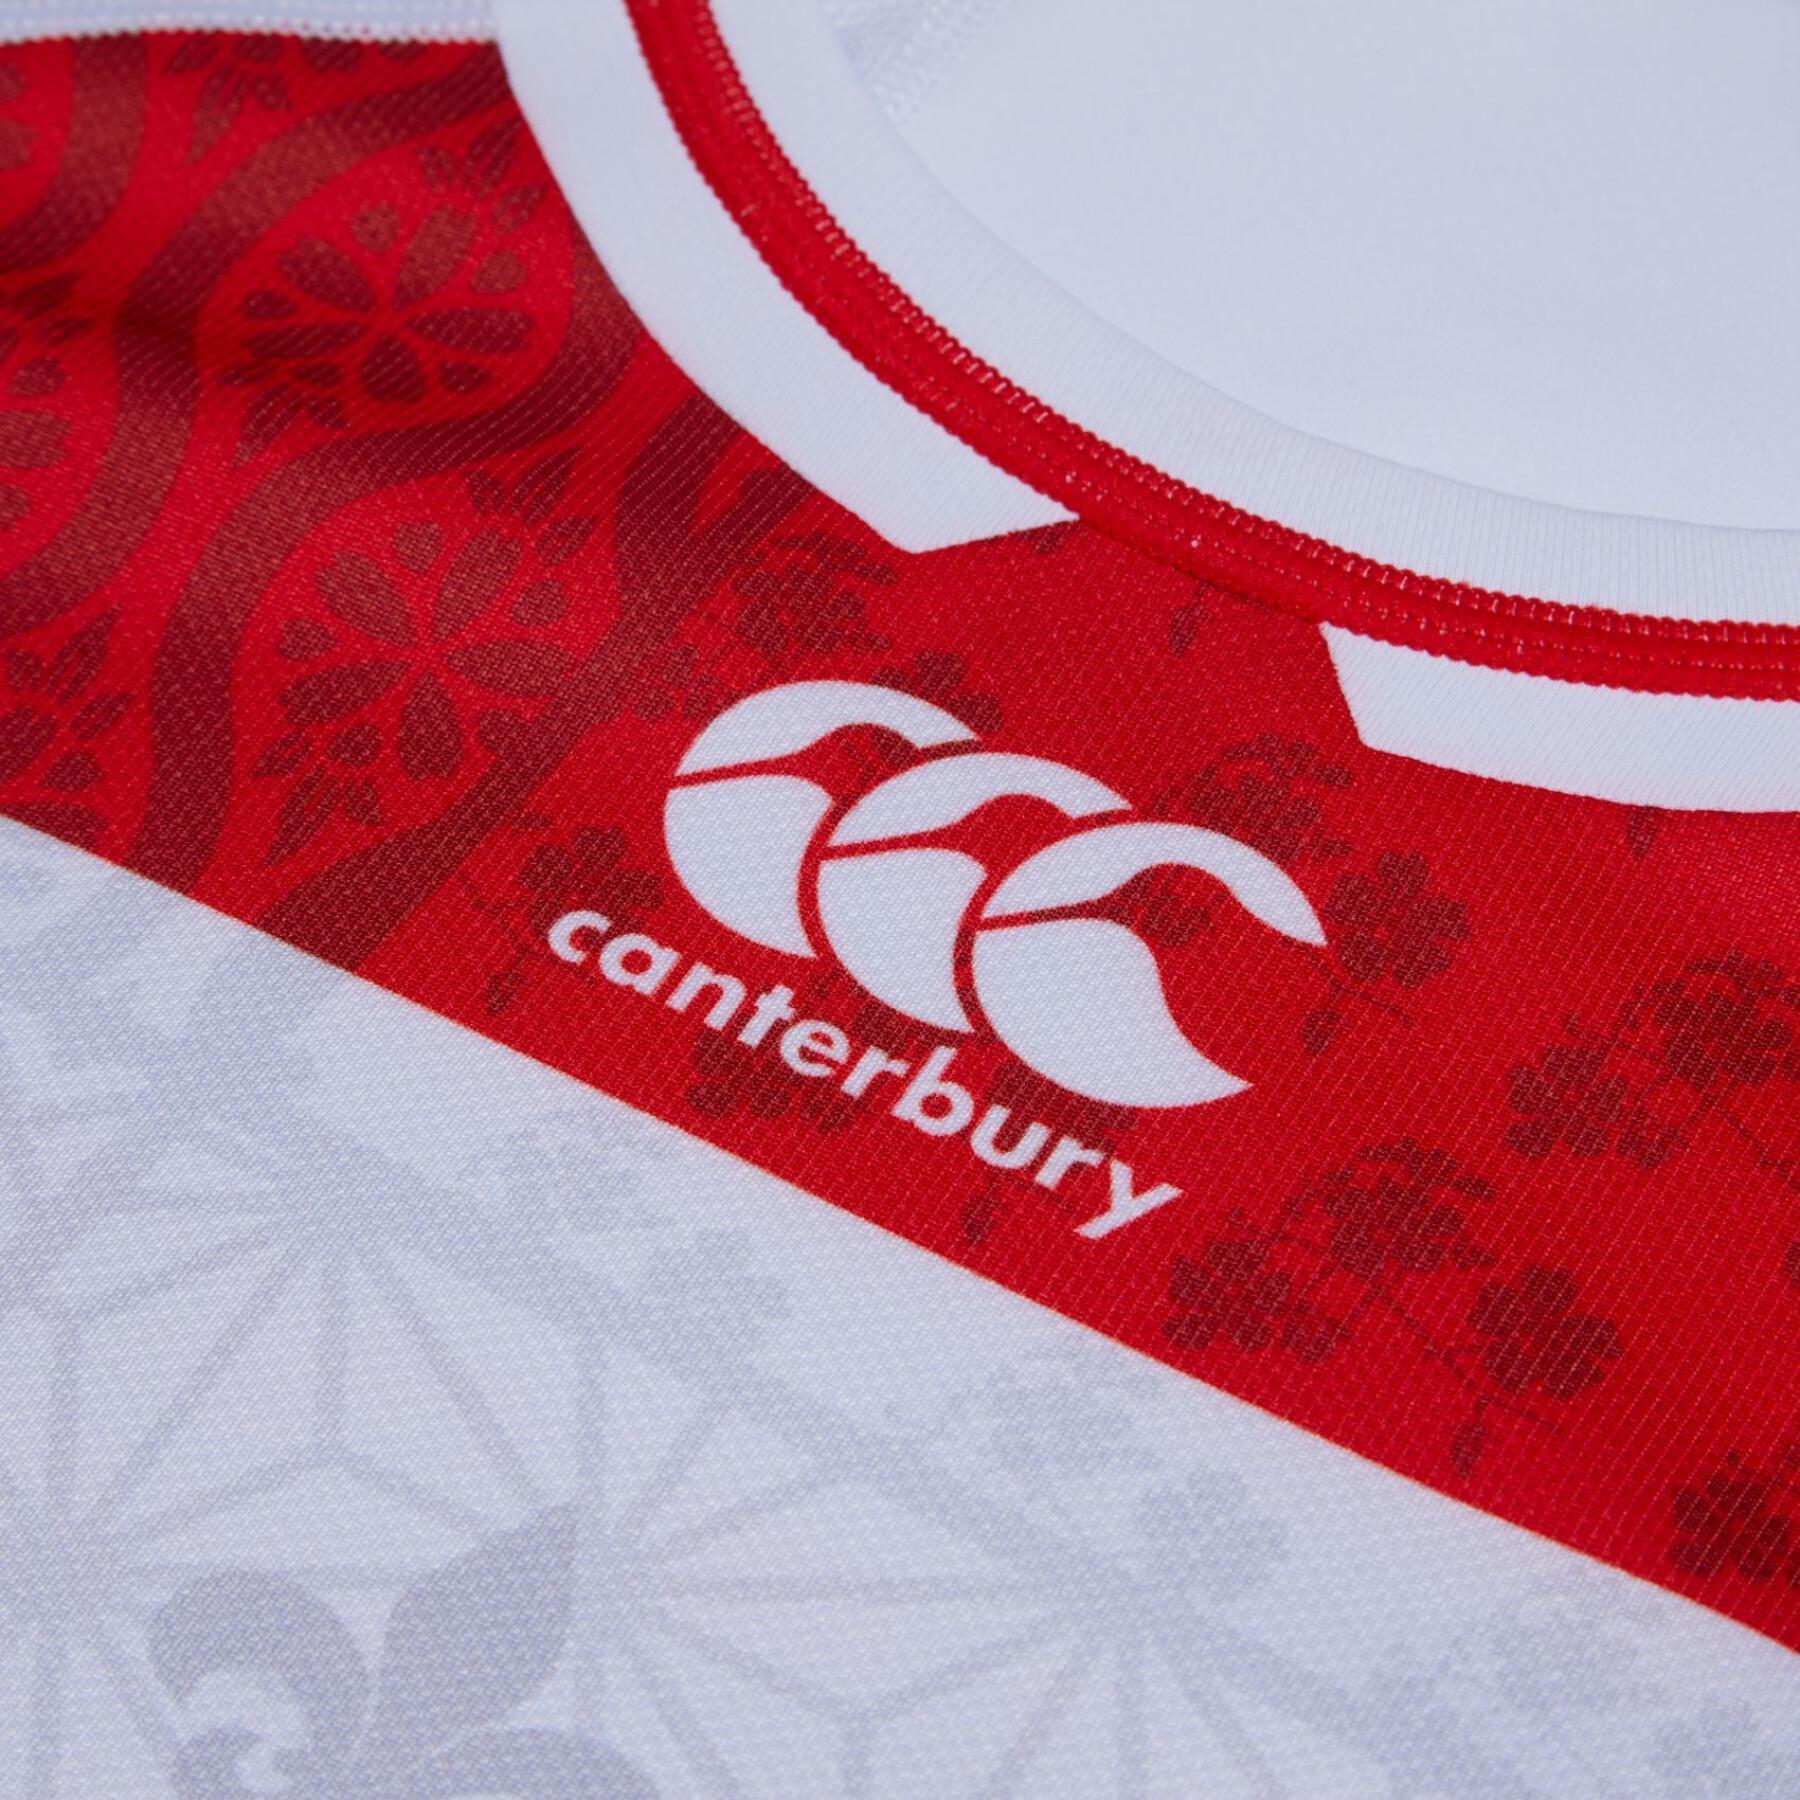 Camiseta primera equipación Japon Copa del mundo de Rugby 2023